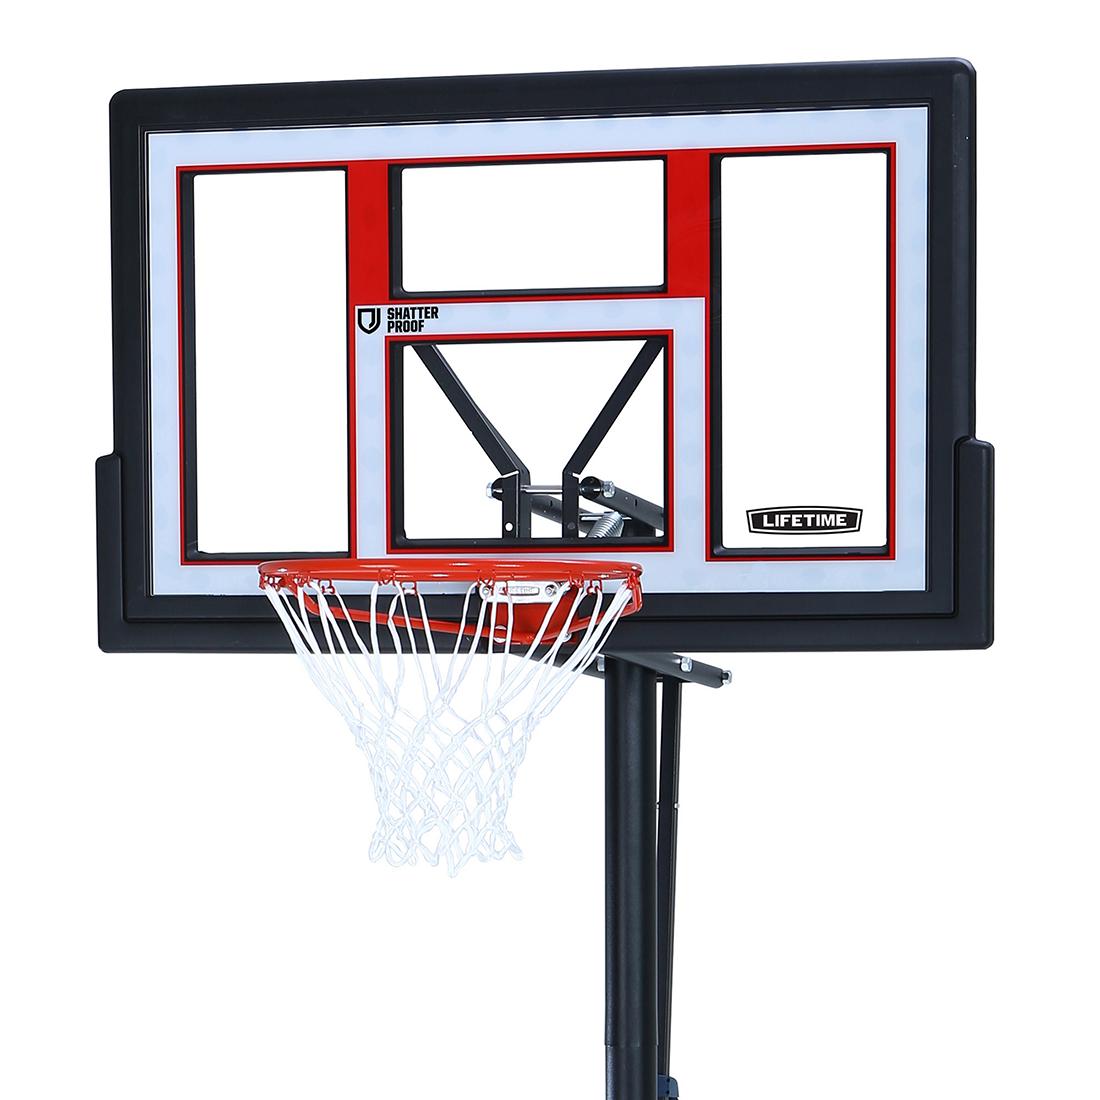 Lifetime 50" Adjustable Portable Basketball Hoop System - Citywide Shop